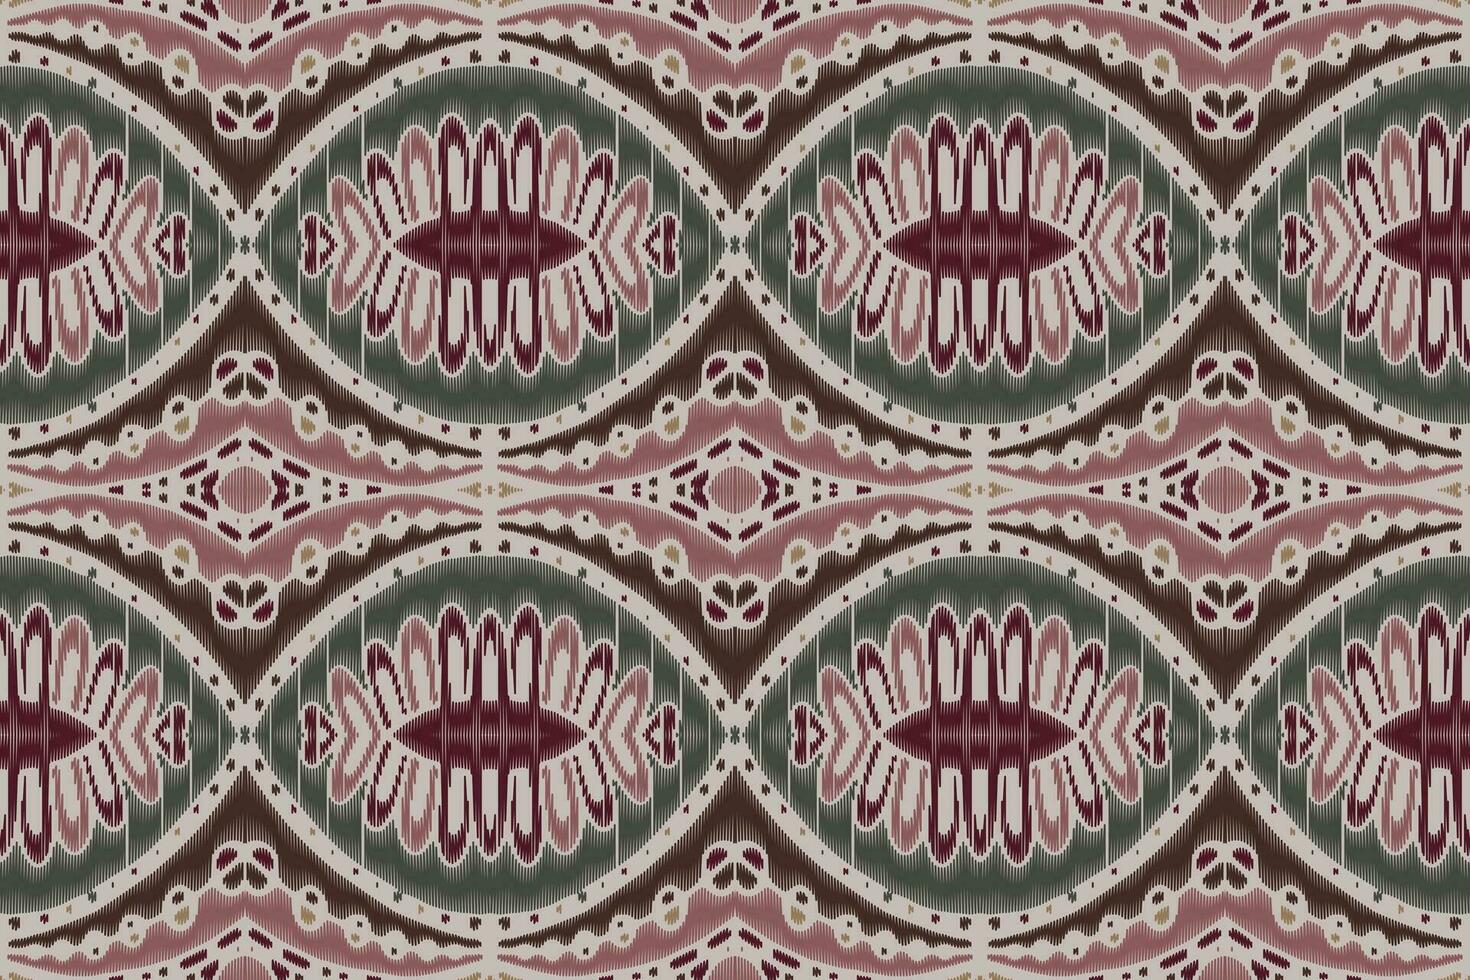 bordado de paisley floral ikat sobre fondo blanco.patrón oriental étnico geométrico tradicional.ilustración vectorial abstracta de estilo azteca.diseño para textura,tela,ropa,envoltura,decoración,sarong. vector